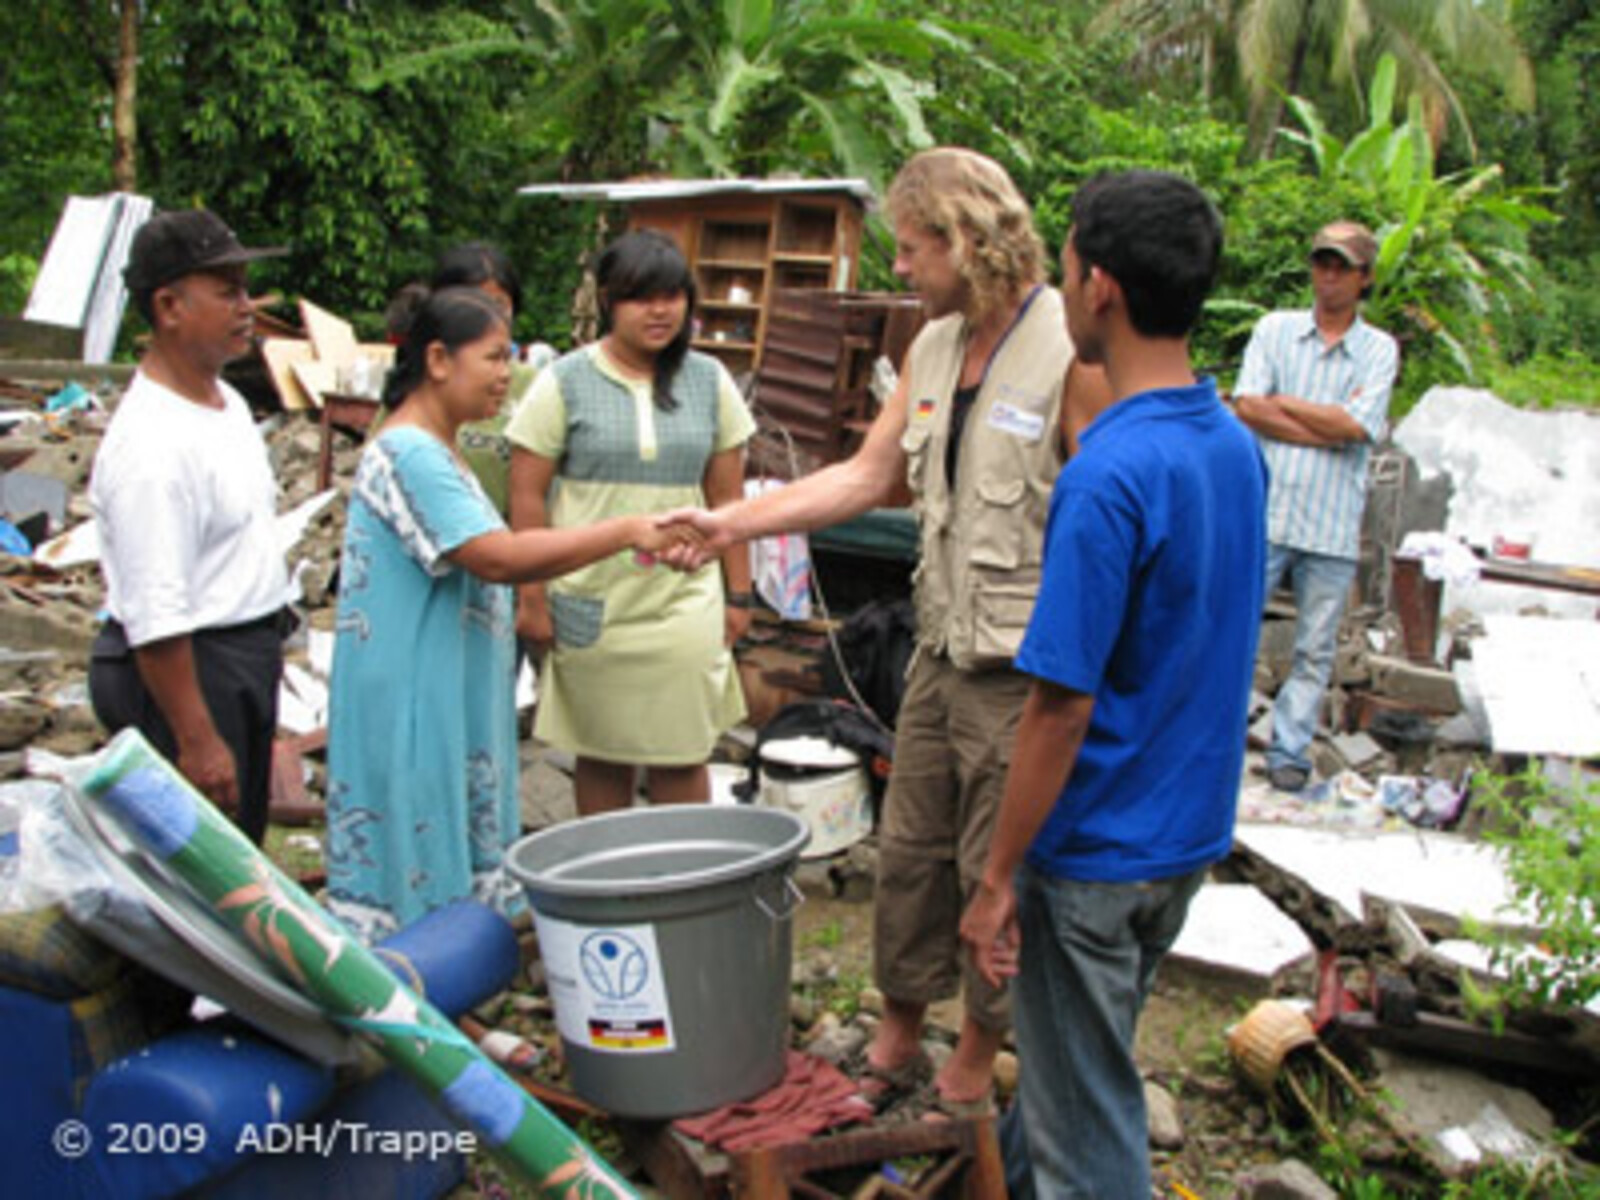 Katastrophen Südostasien: Helfer redet mit Betroffenen und schüttelt ihre Hände